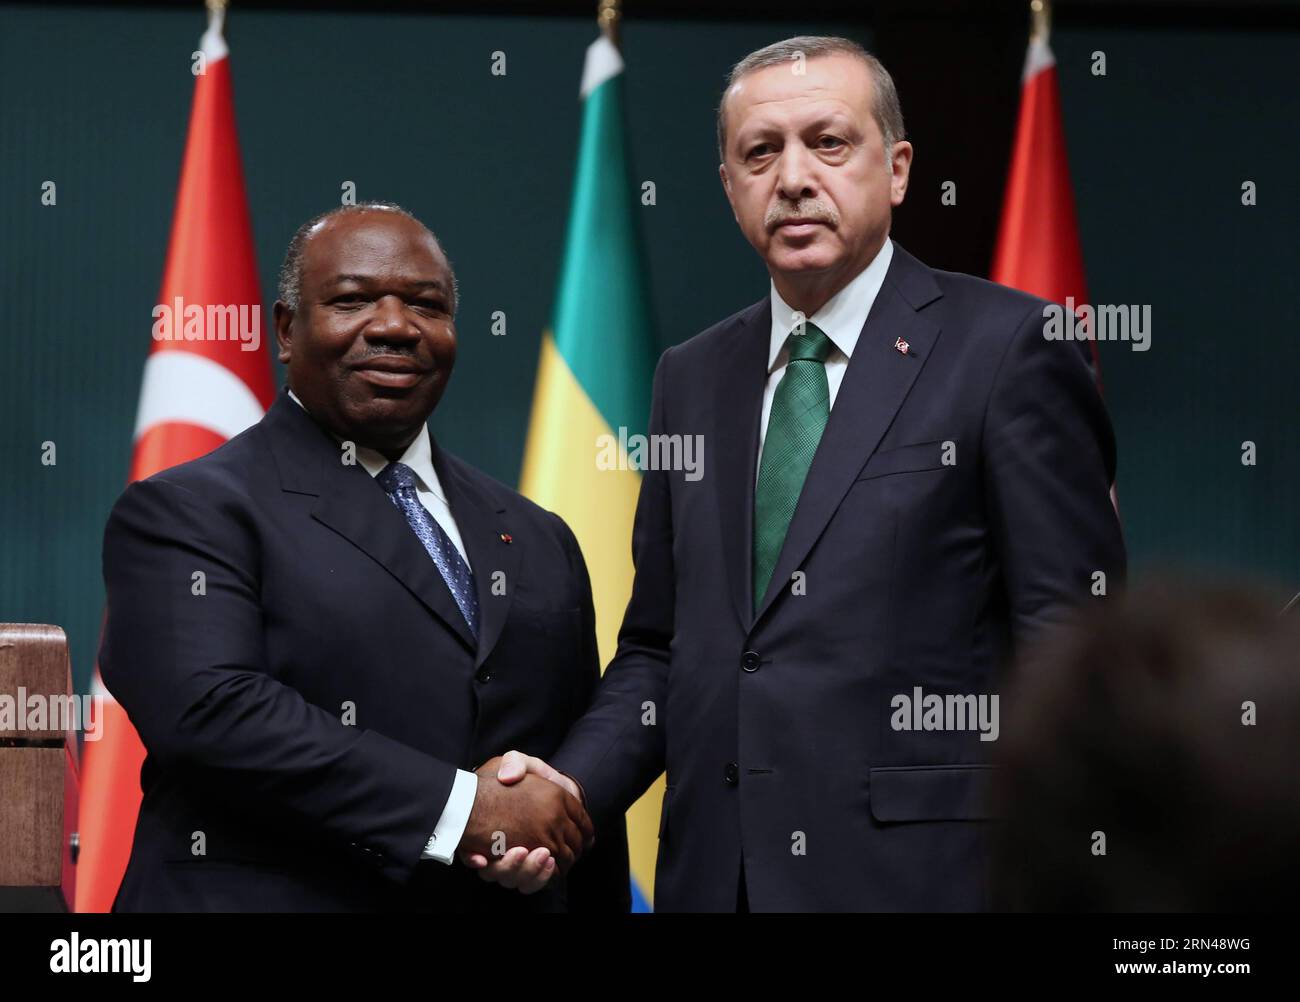 (150512) -- ANKARA, 12 mai 2015, -- le président turc Recep Tayyip Erdogan (à droite) et le président gabonais Ali Bongo Ondimba en visite se serrent la main alors qu'ils assistaient à une conférence de presse conjointe à Ankara, Turquie, le 12 mai 2015. Mardi, le président turc Recep Tayyip Erdogan a fermement condamné une attaque contre un cargo turc au large des côtes libyennes, tuant une personne et blessant plusieurs autres membres d'équipage. TURQUIE-ANKARA-GABON-CONFÉRENCE DE PRESSE-CARGO ATTAQUE MustafaxKaya PUBLICATIONxNOTxINxCHN 150512 Ankara Mai 12 2015 le président turc Recep Tayyip Erdogan r et le président gabonais Ali Bong en visite Banque D'Images